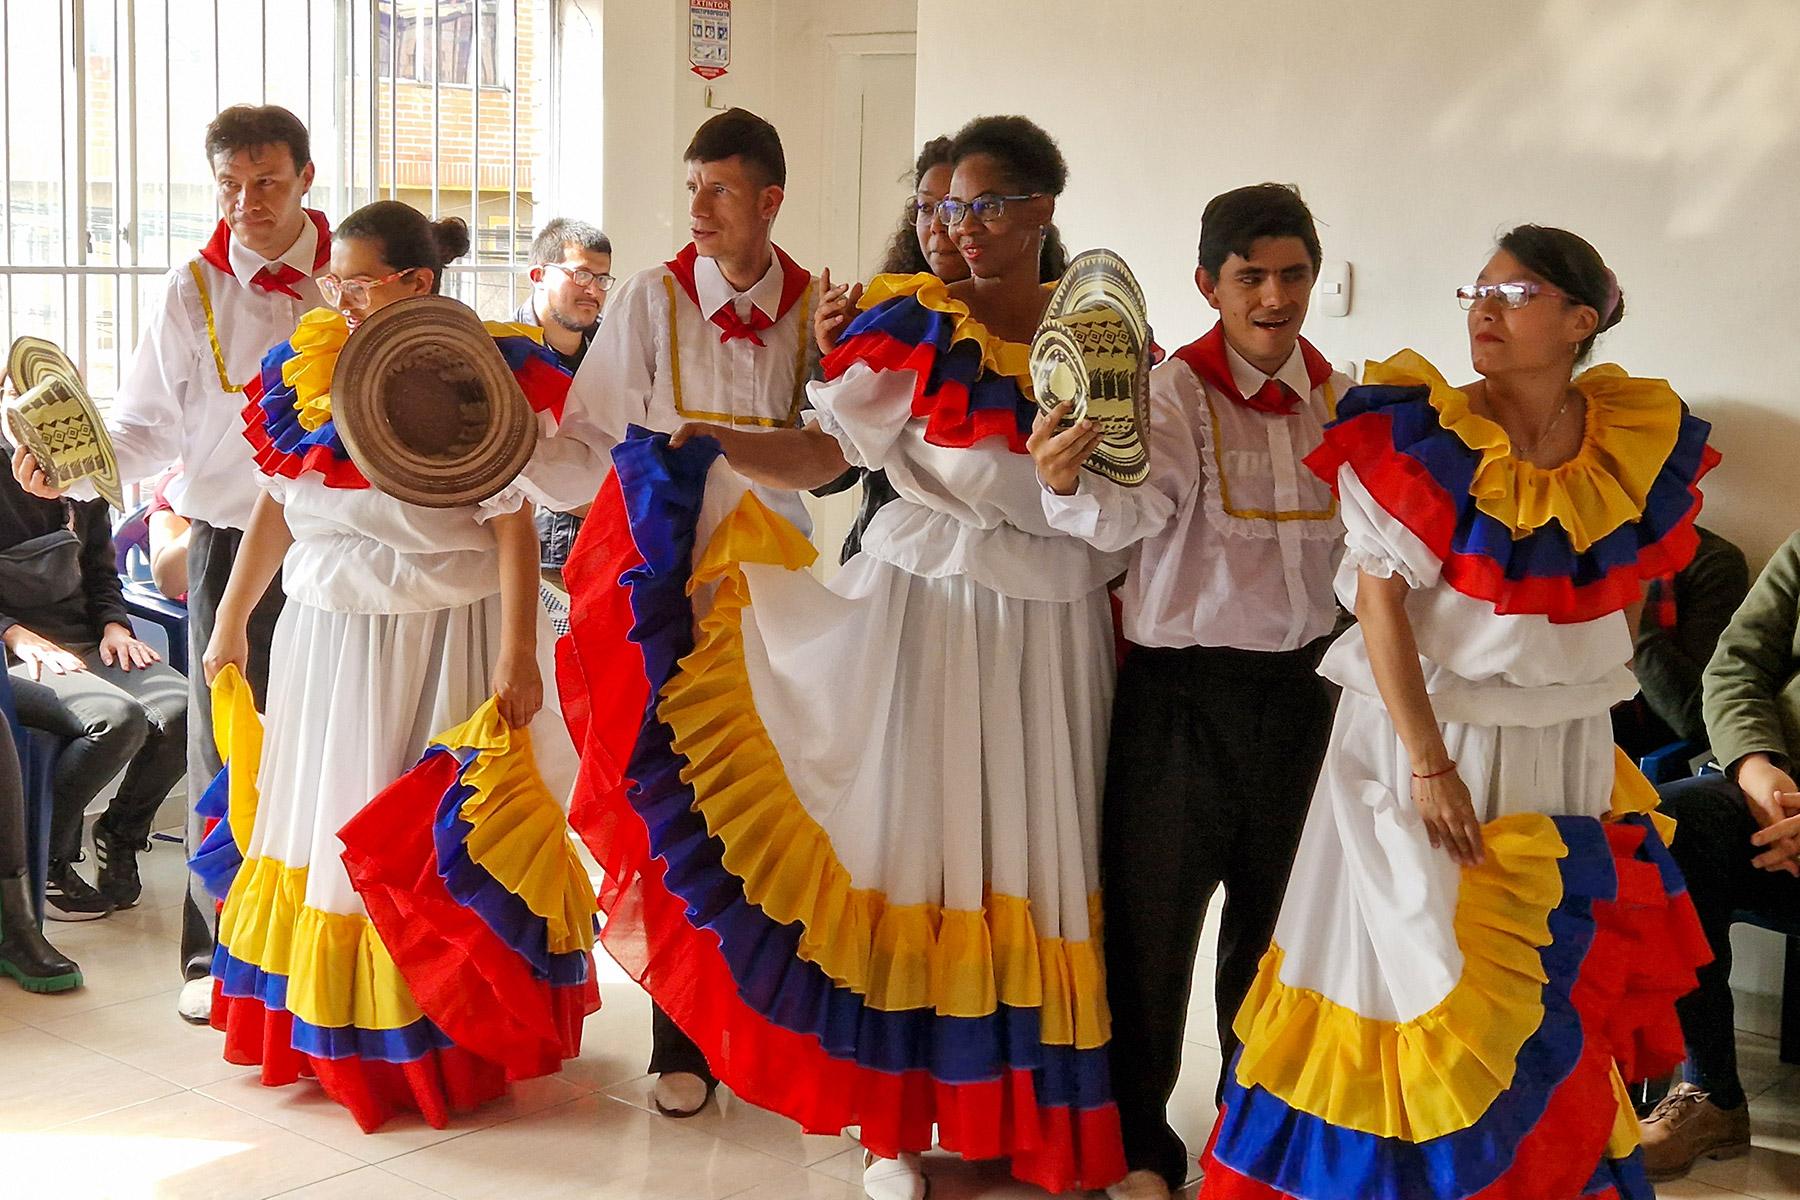 En el Centro de Capacitación Integral True Vine (La Vid Verdadera) un grupo de personas con discapacidad auditiva o mental presenta con orgullo una danza tradicional colombiana a los visitantes de la Pre-Asamblea de la FLM. Fotografía: FLM/A. Weyermüller